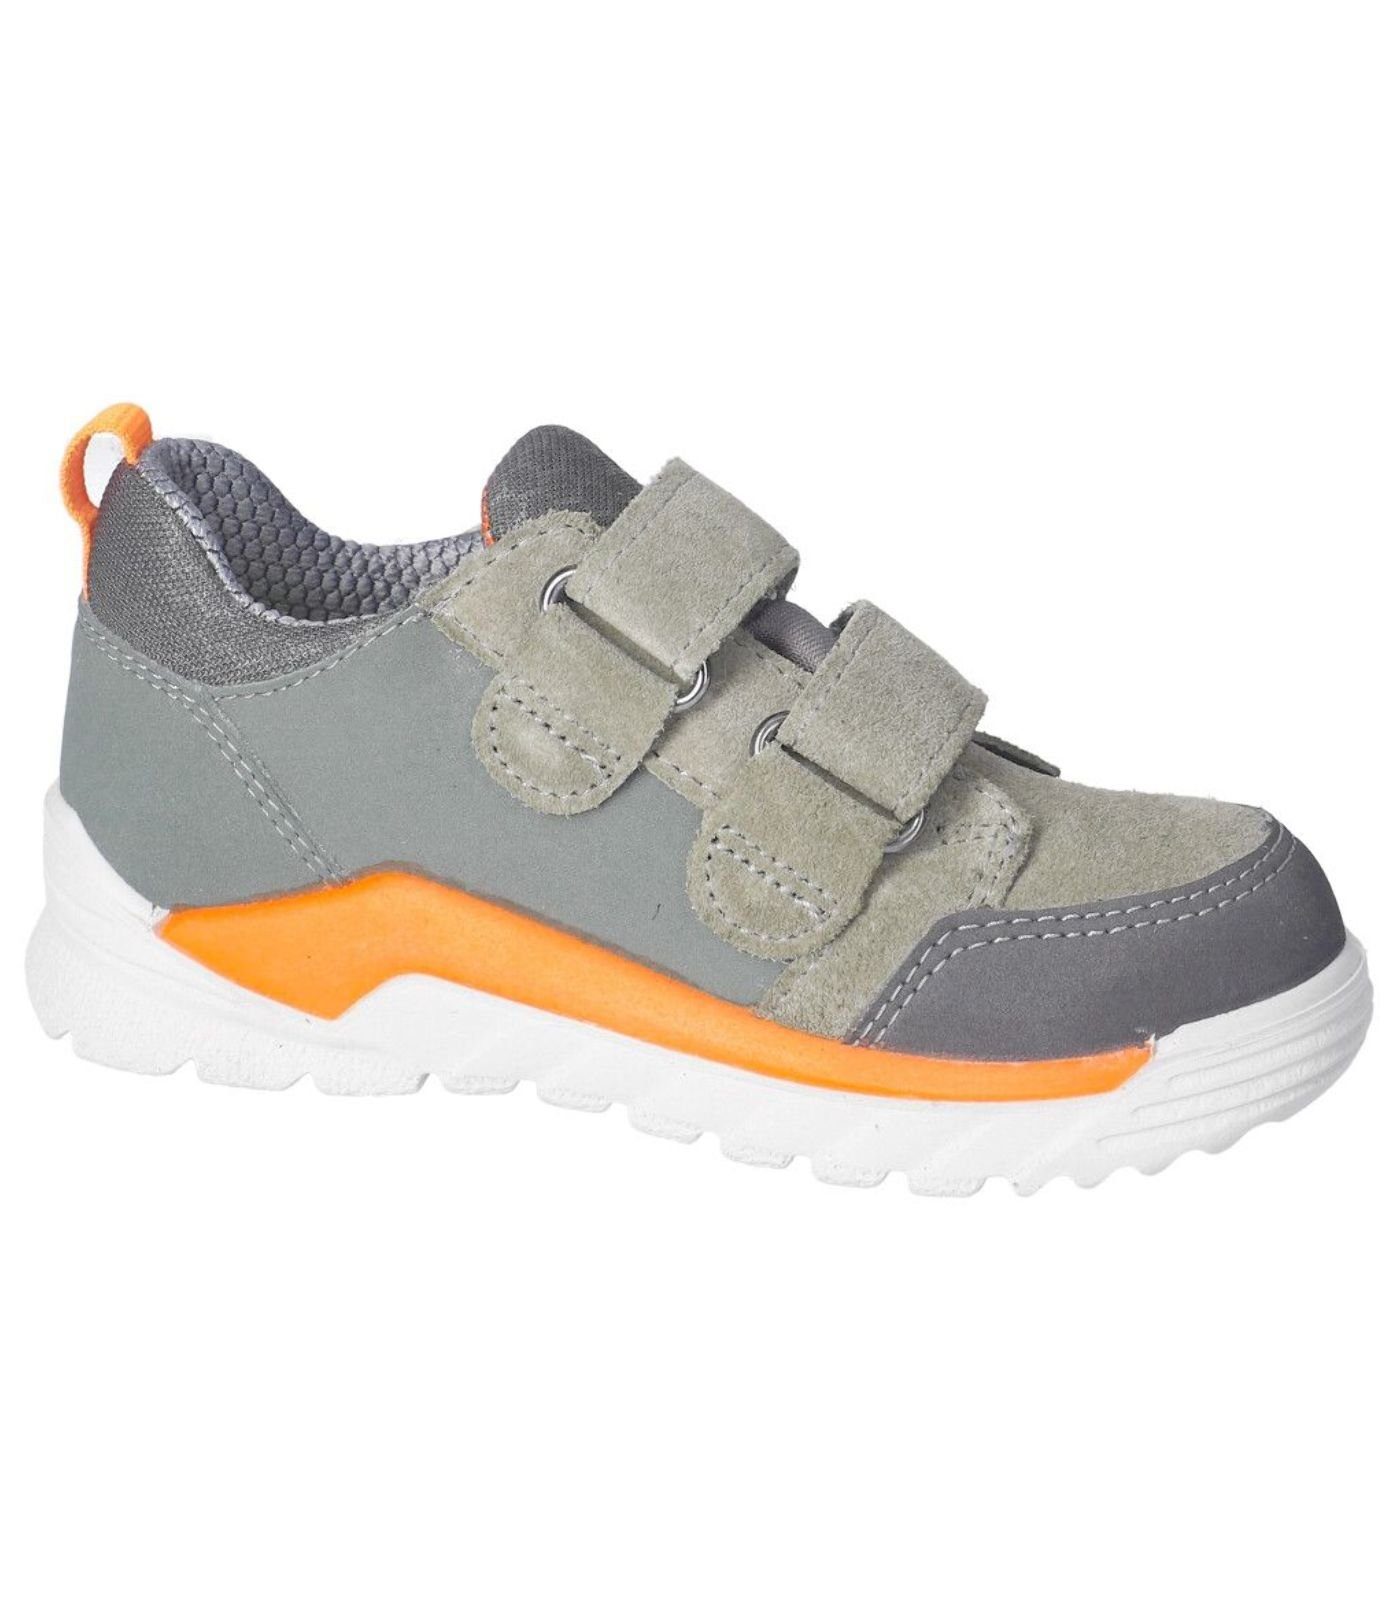 Veloursleder/Textil Sneaker Sneaker (530) Ricosta eukalyptus/grau